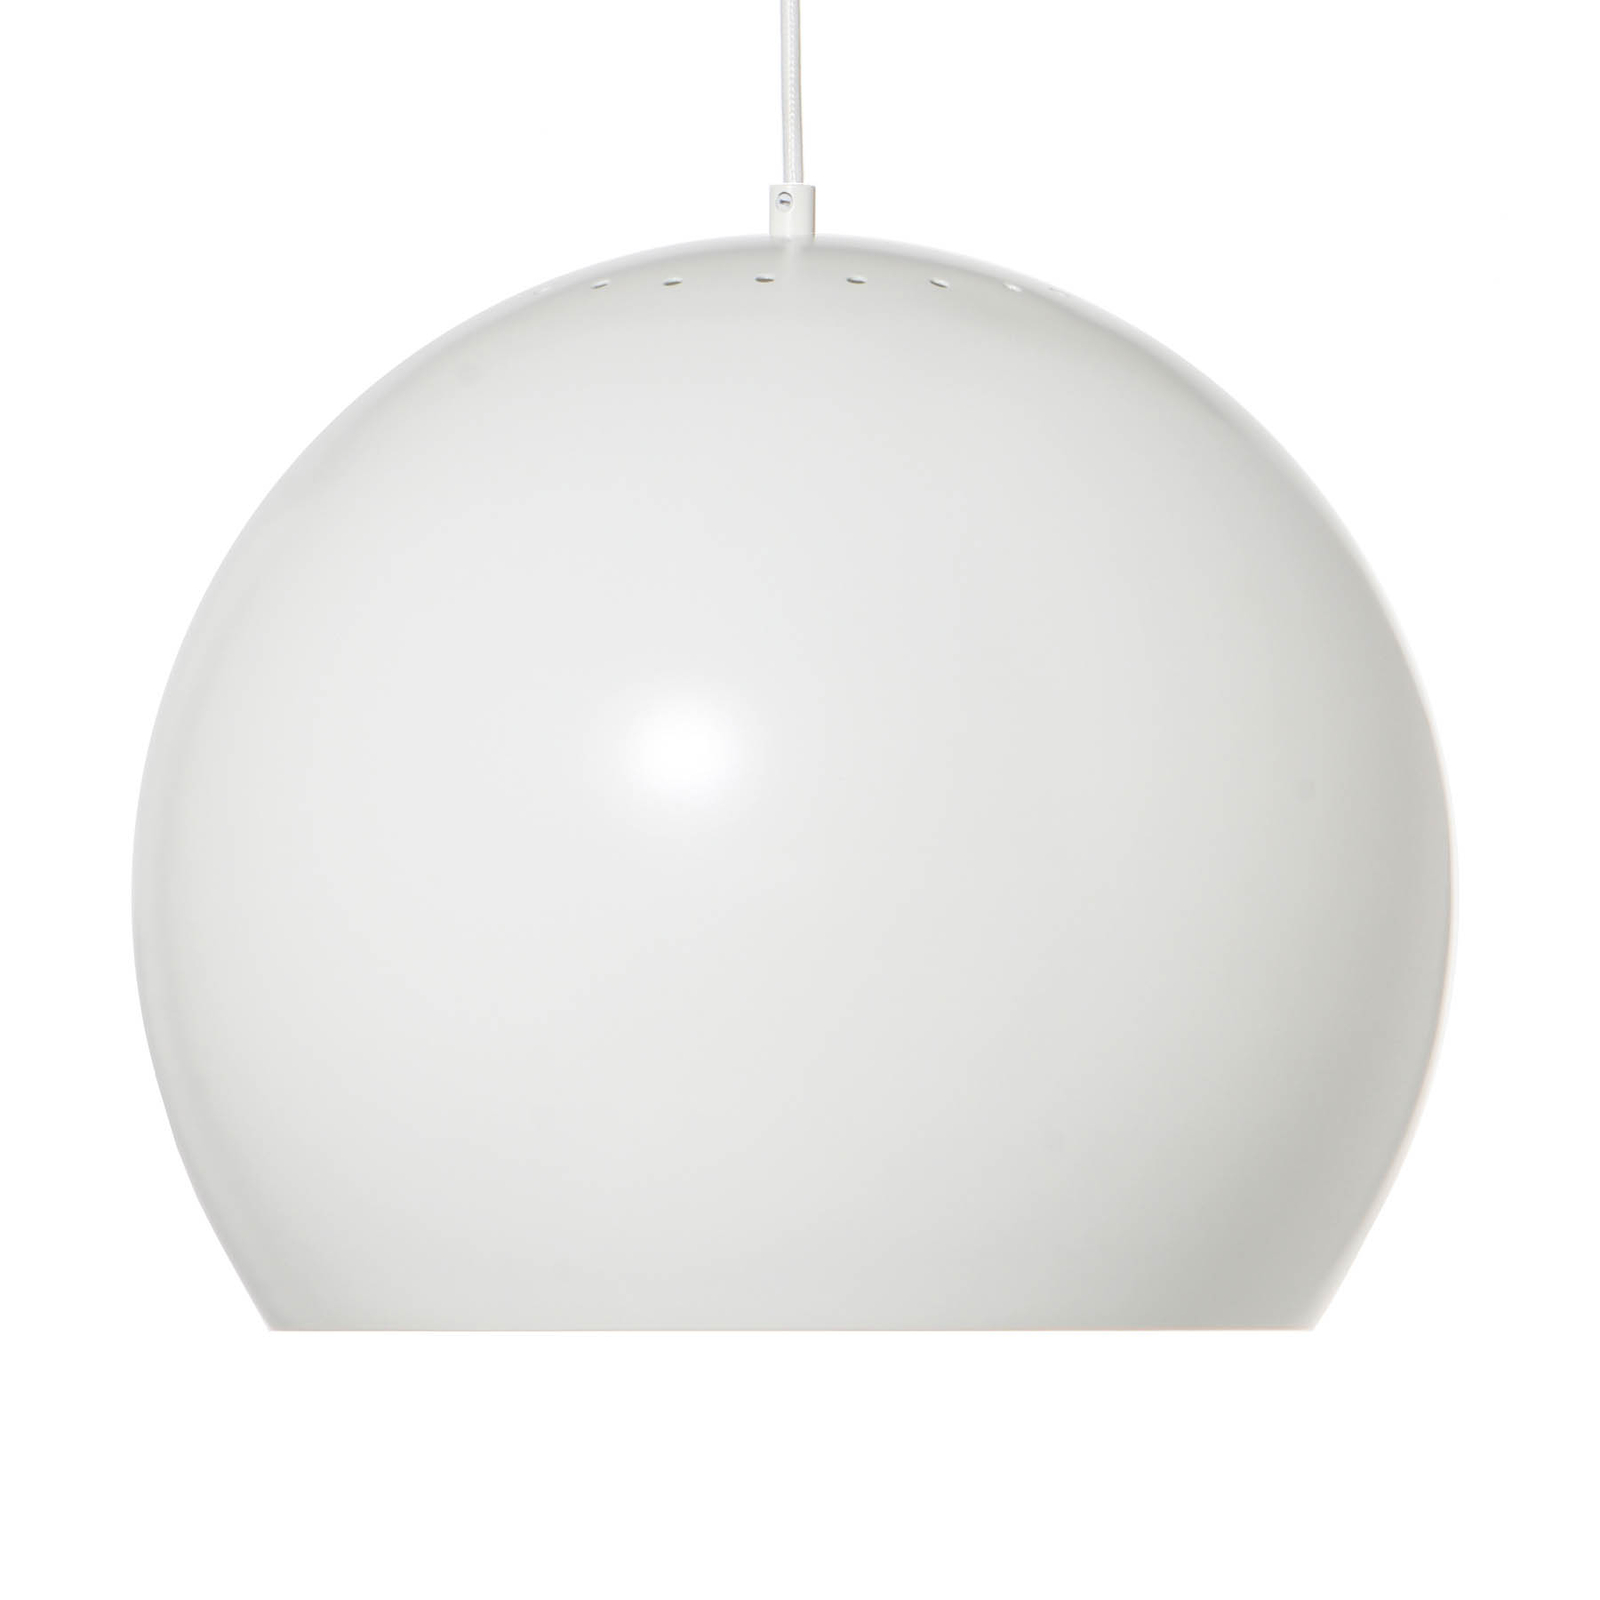 FRANDSEN Ball hängande lampa Ø 40 cm, vit